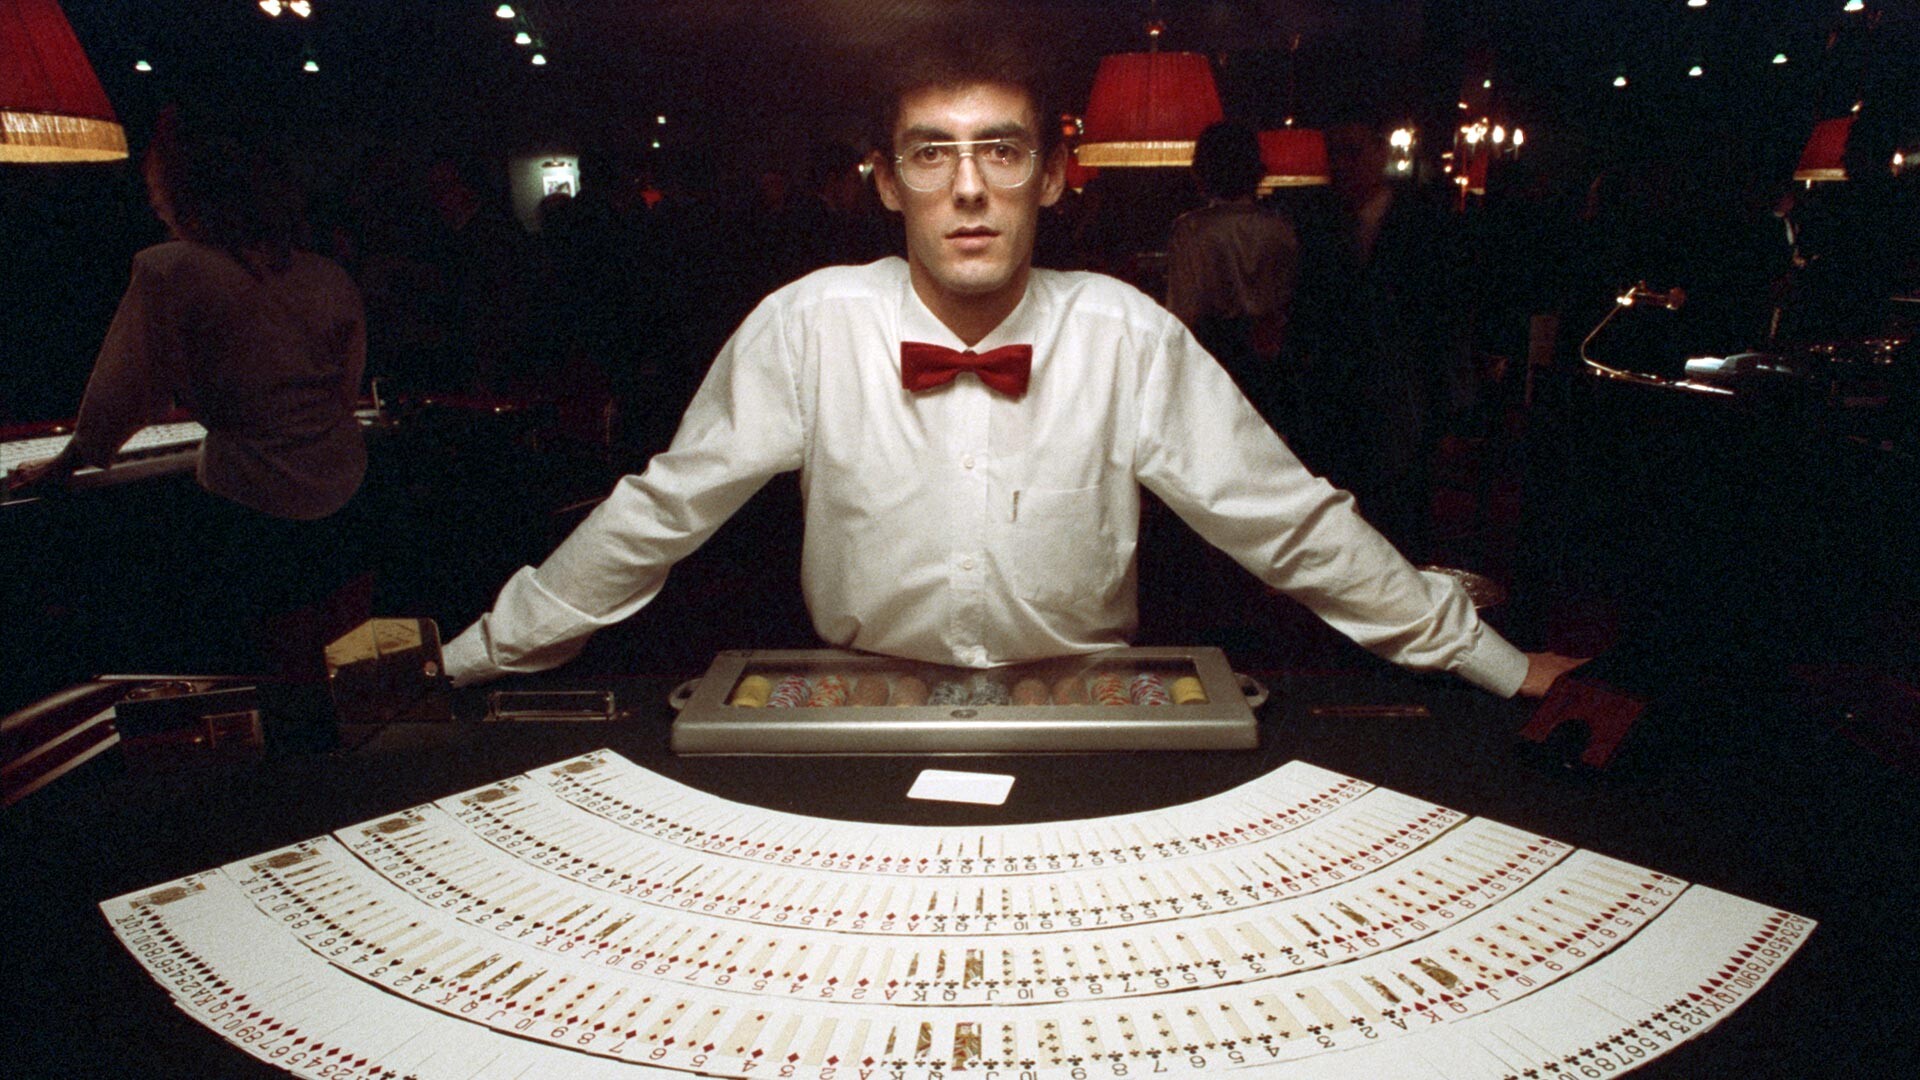 Un croupier de un casino esperando a los clientes.